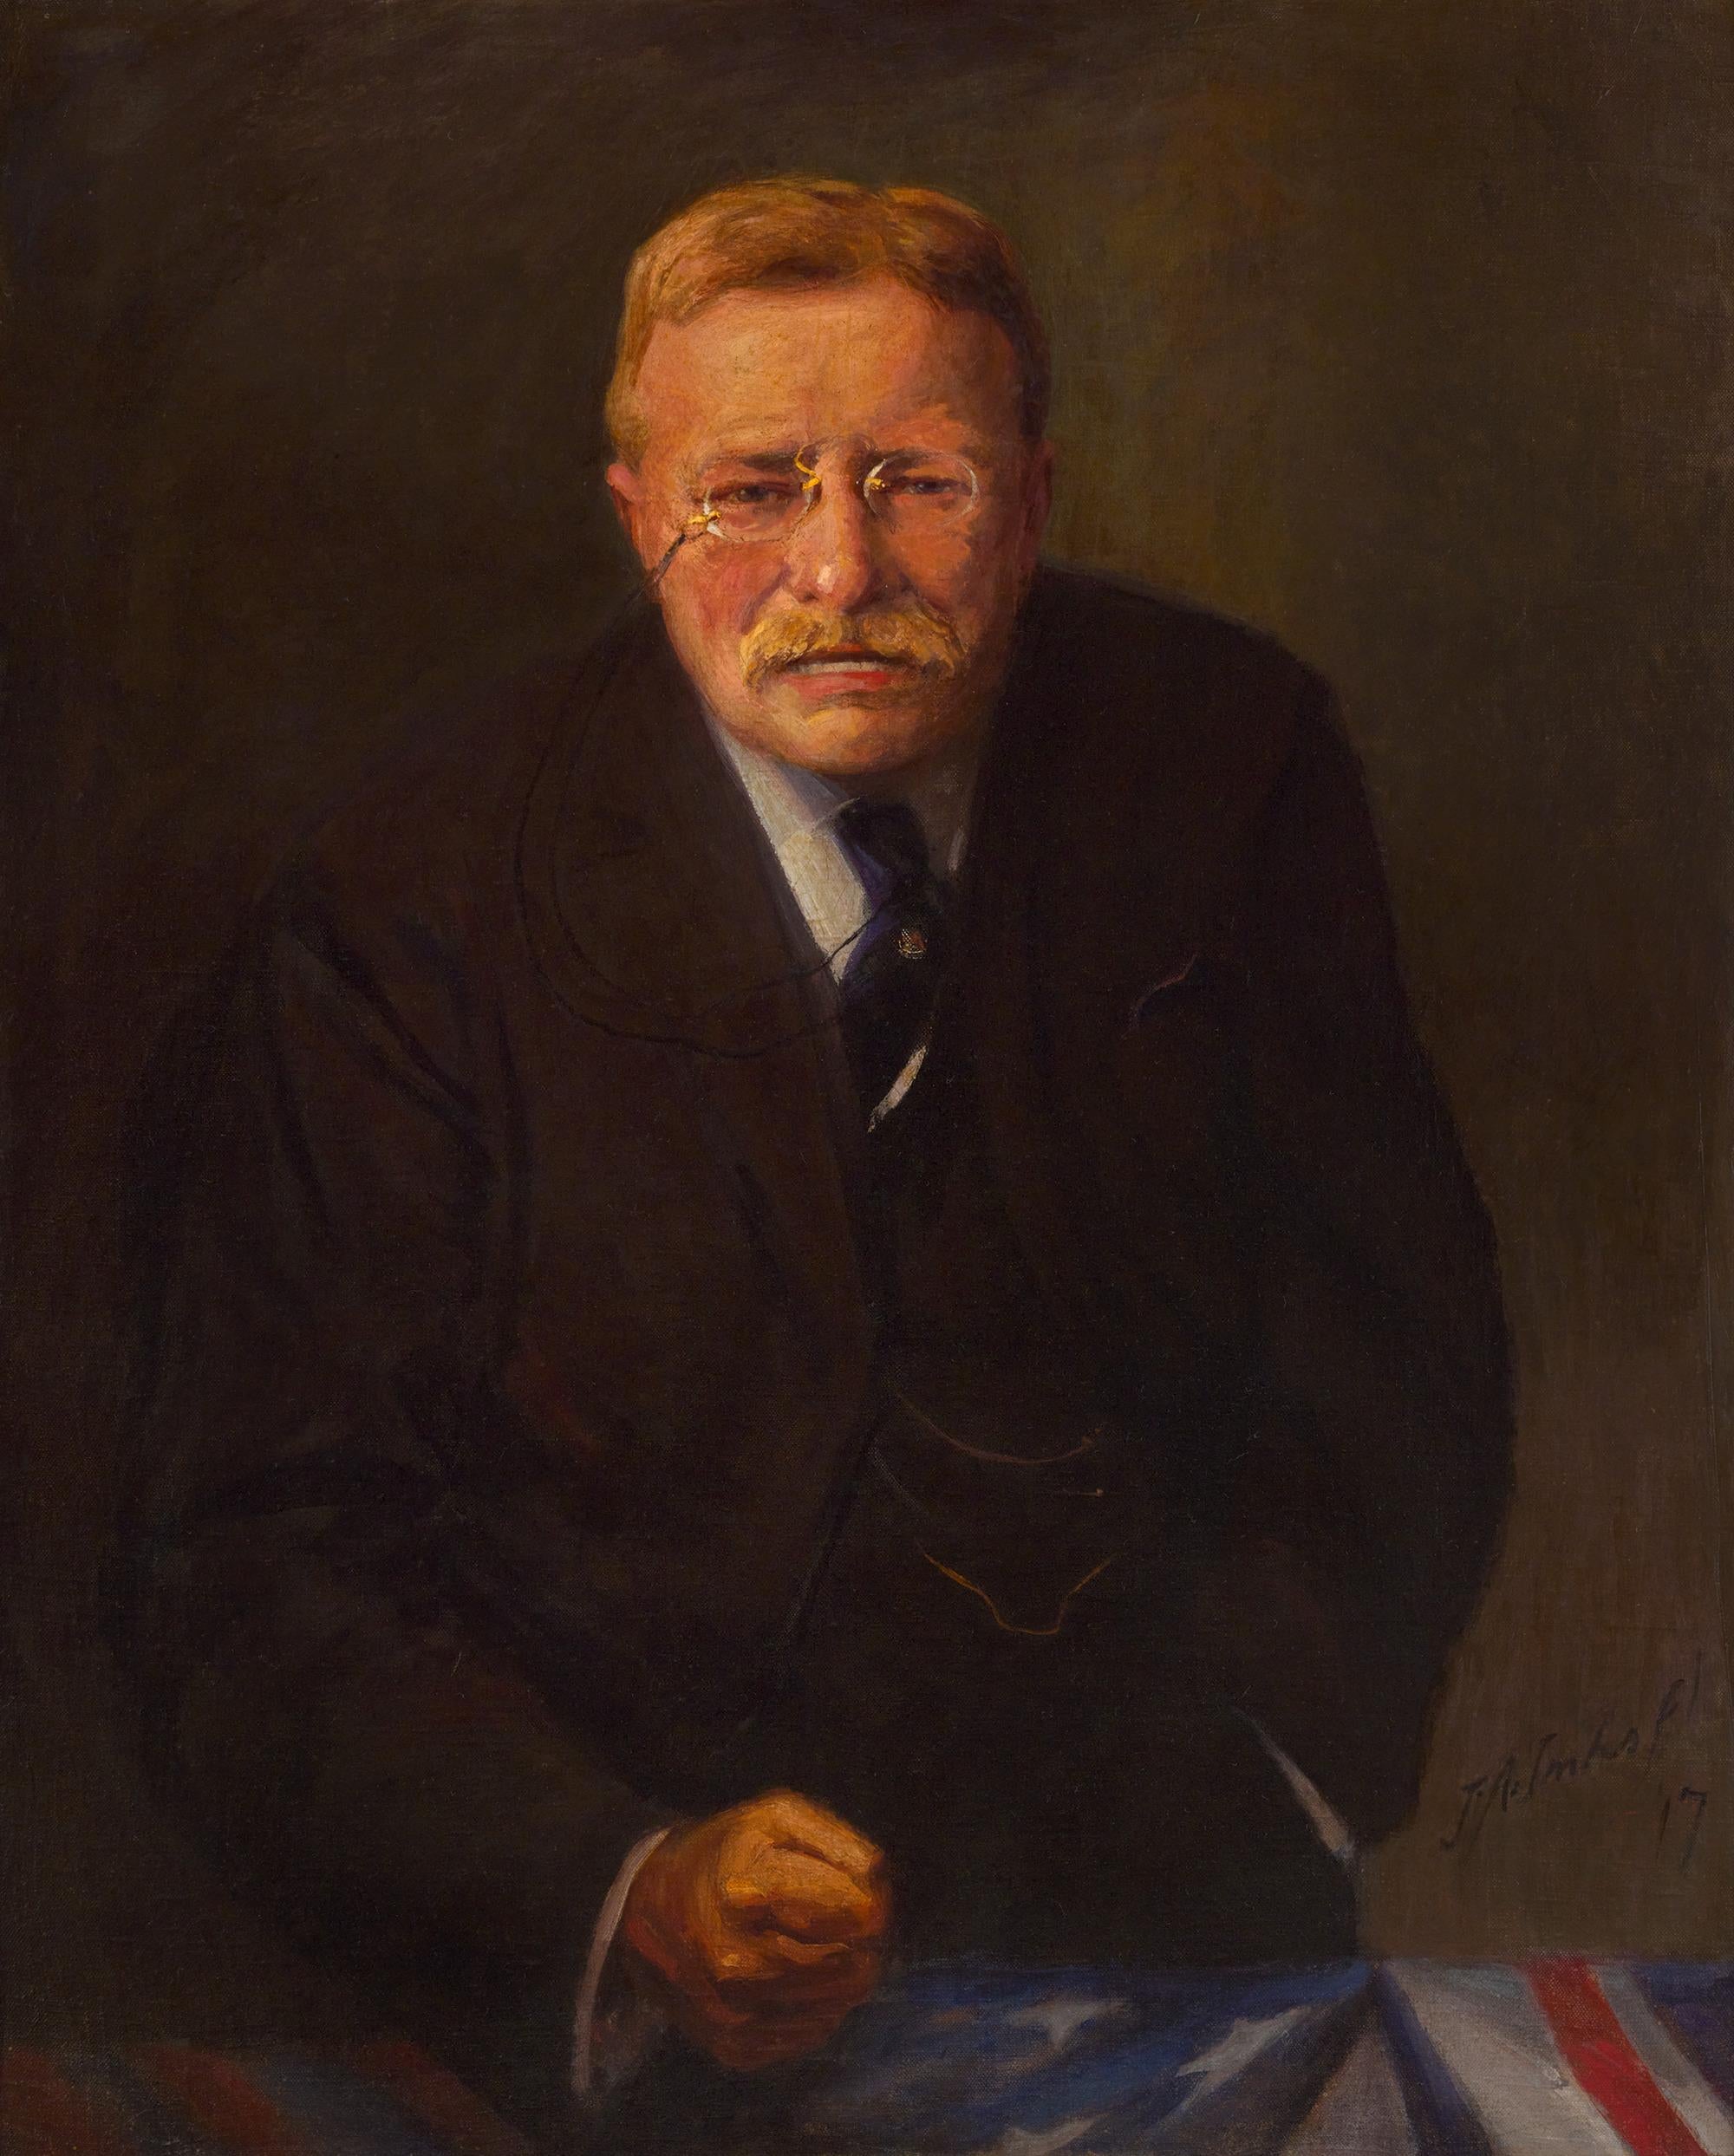 Portrait Painting Joseph Adam Imhof - Portrait de Theodore Roosevelt par Joseph A. Imhof